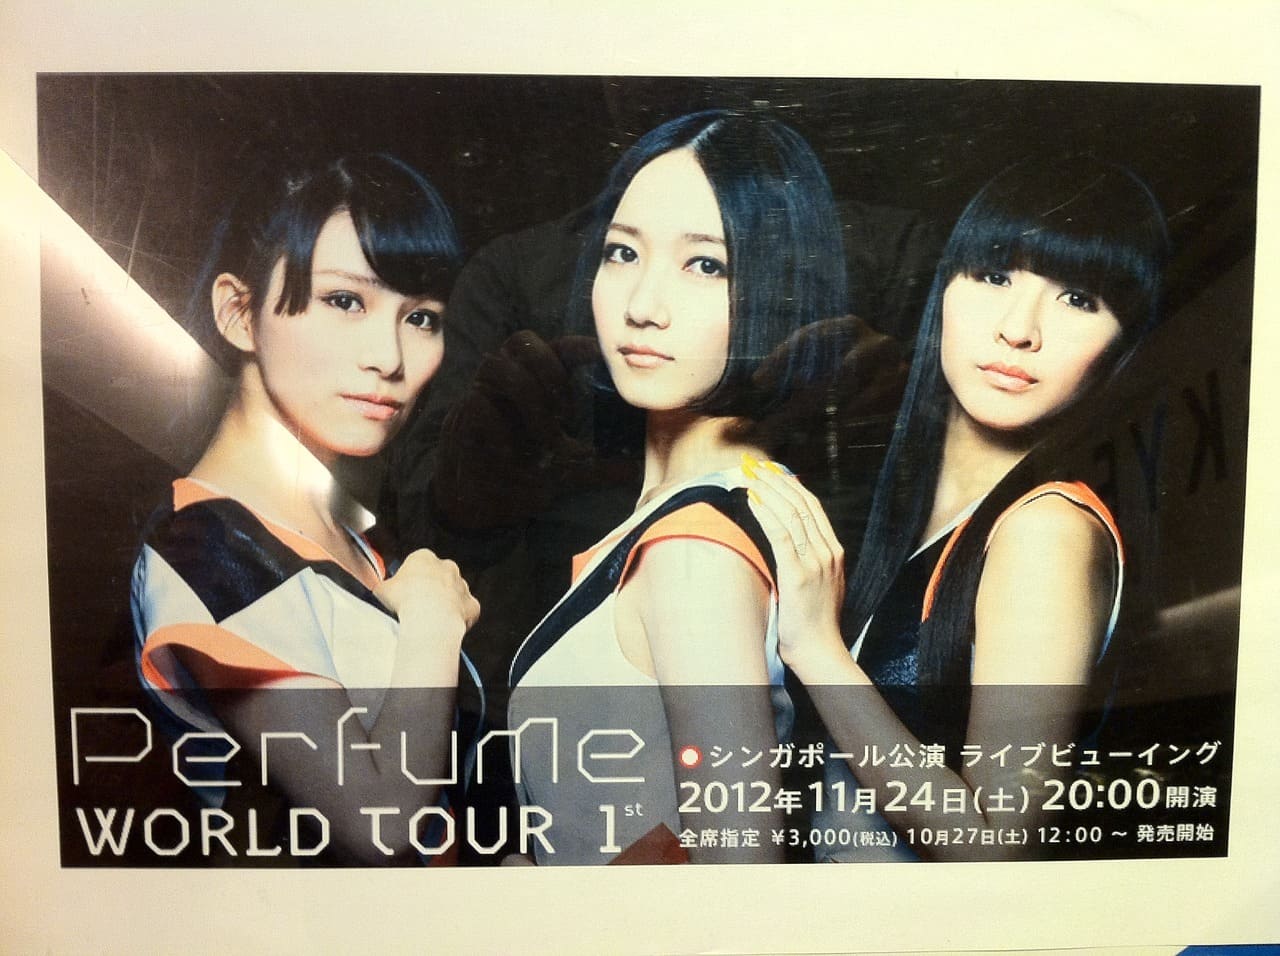 Perfume World Tour 1st シンガポール公演 ライブビューイング